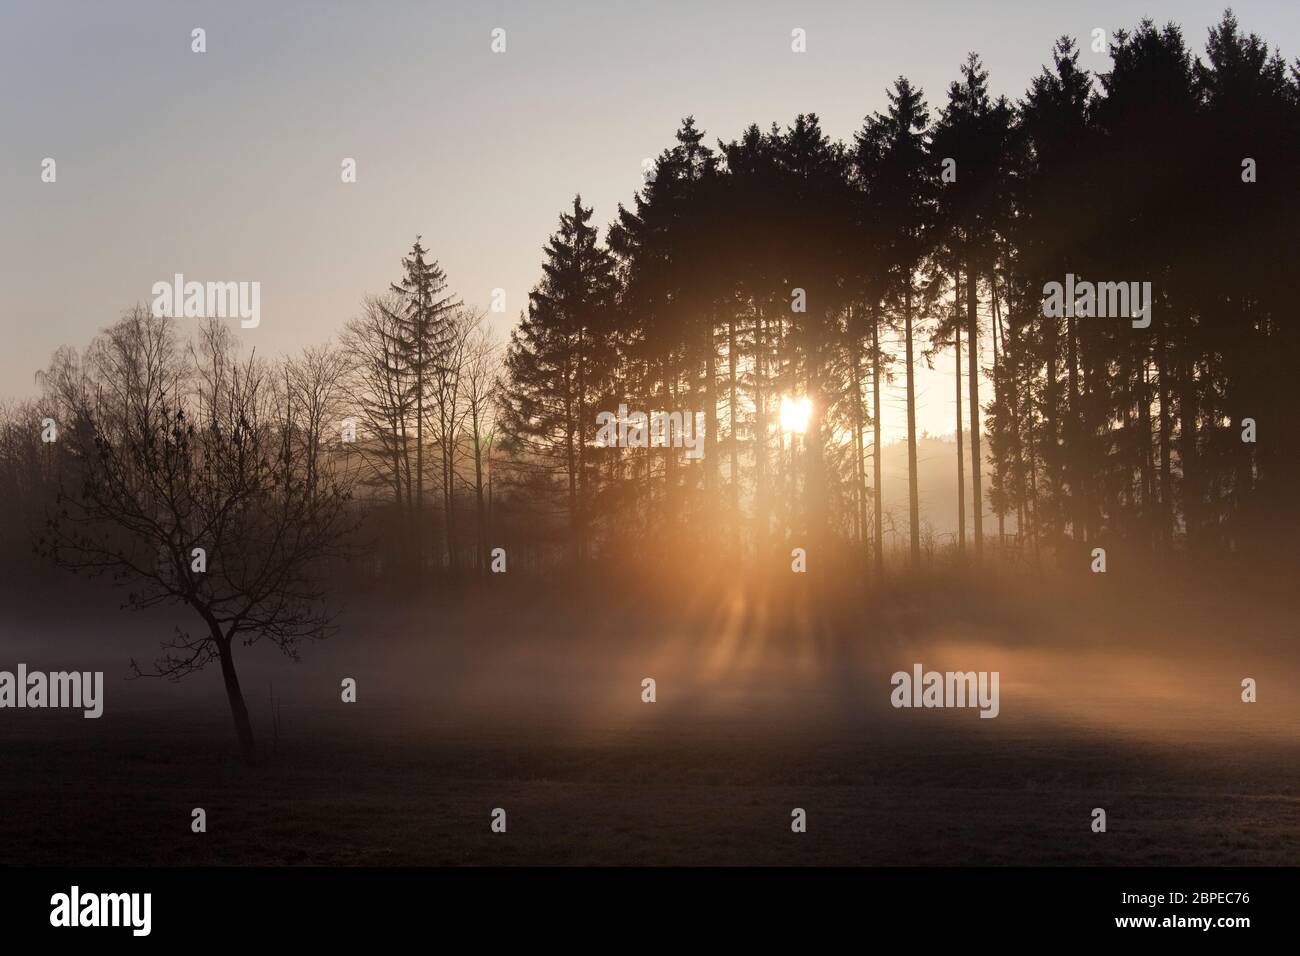 Sonnenaufgang im Nebel auf dem Feld,Wiesen und Wälder im Frühling,Nebelschwaden und durchbrechende Sonne Foto Stock